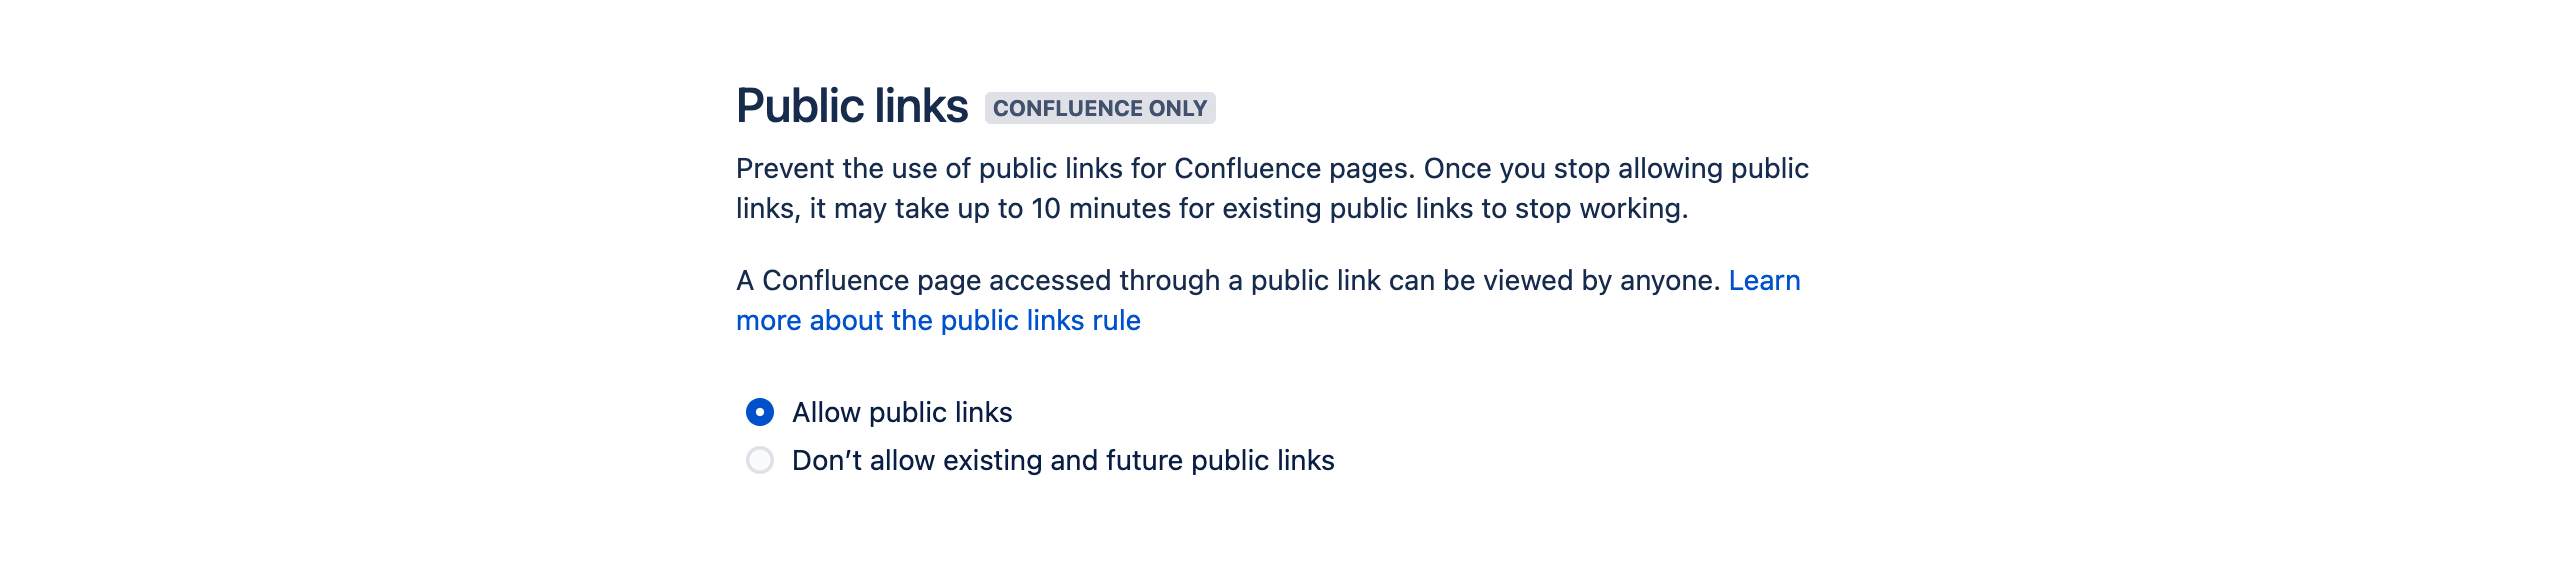 Public links rule configuration options